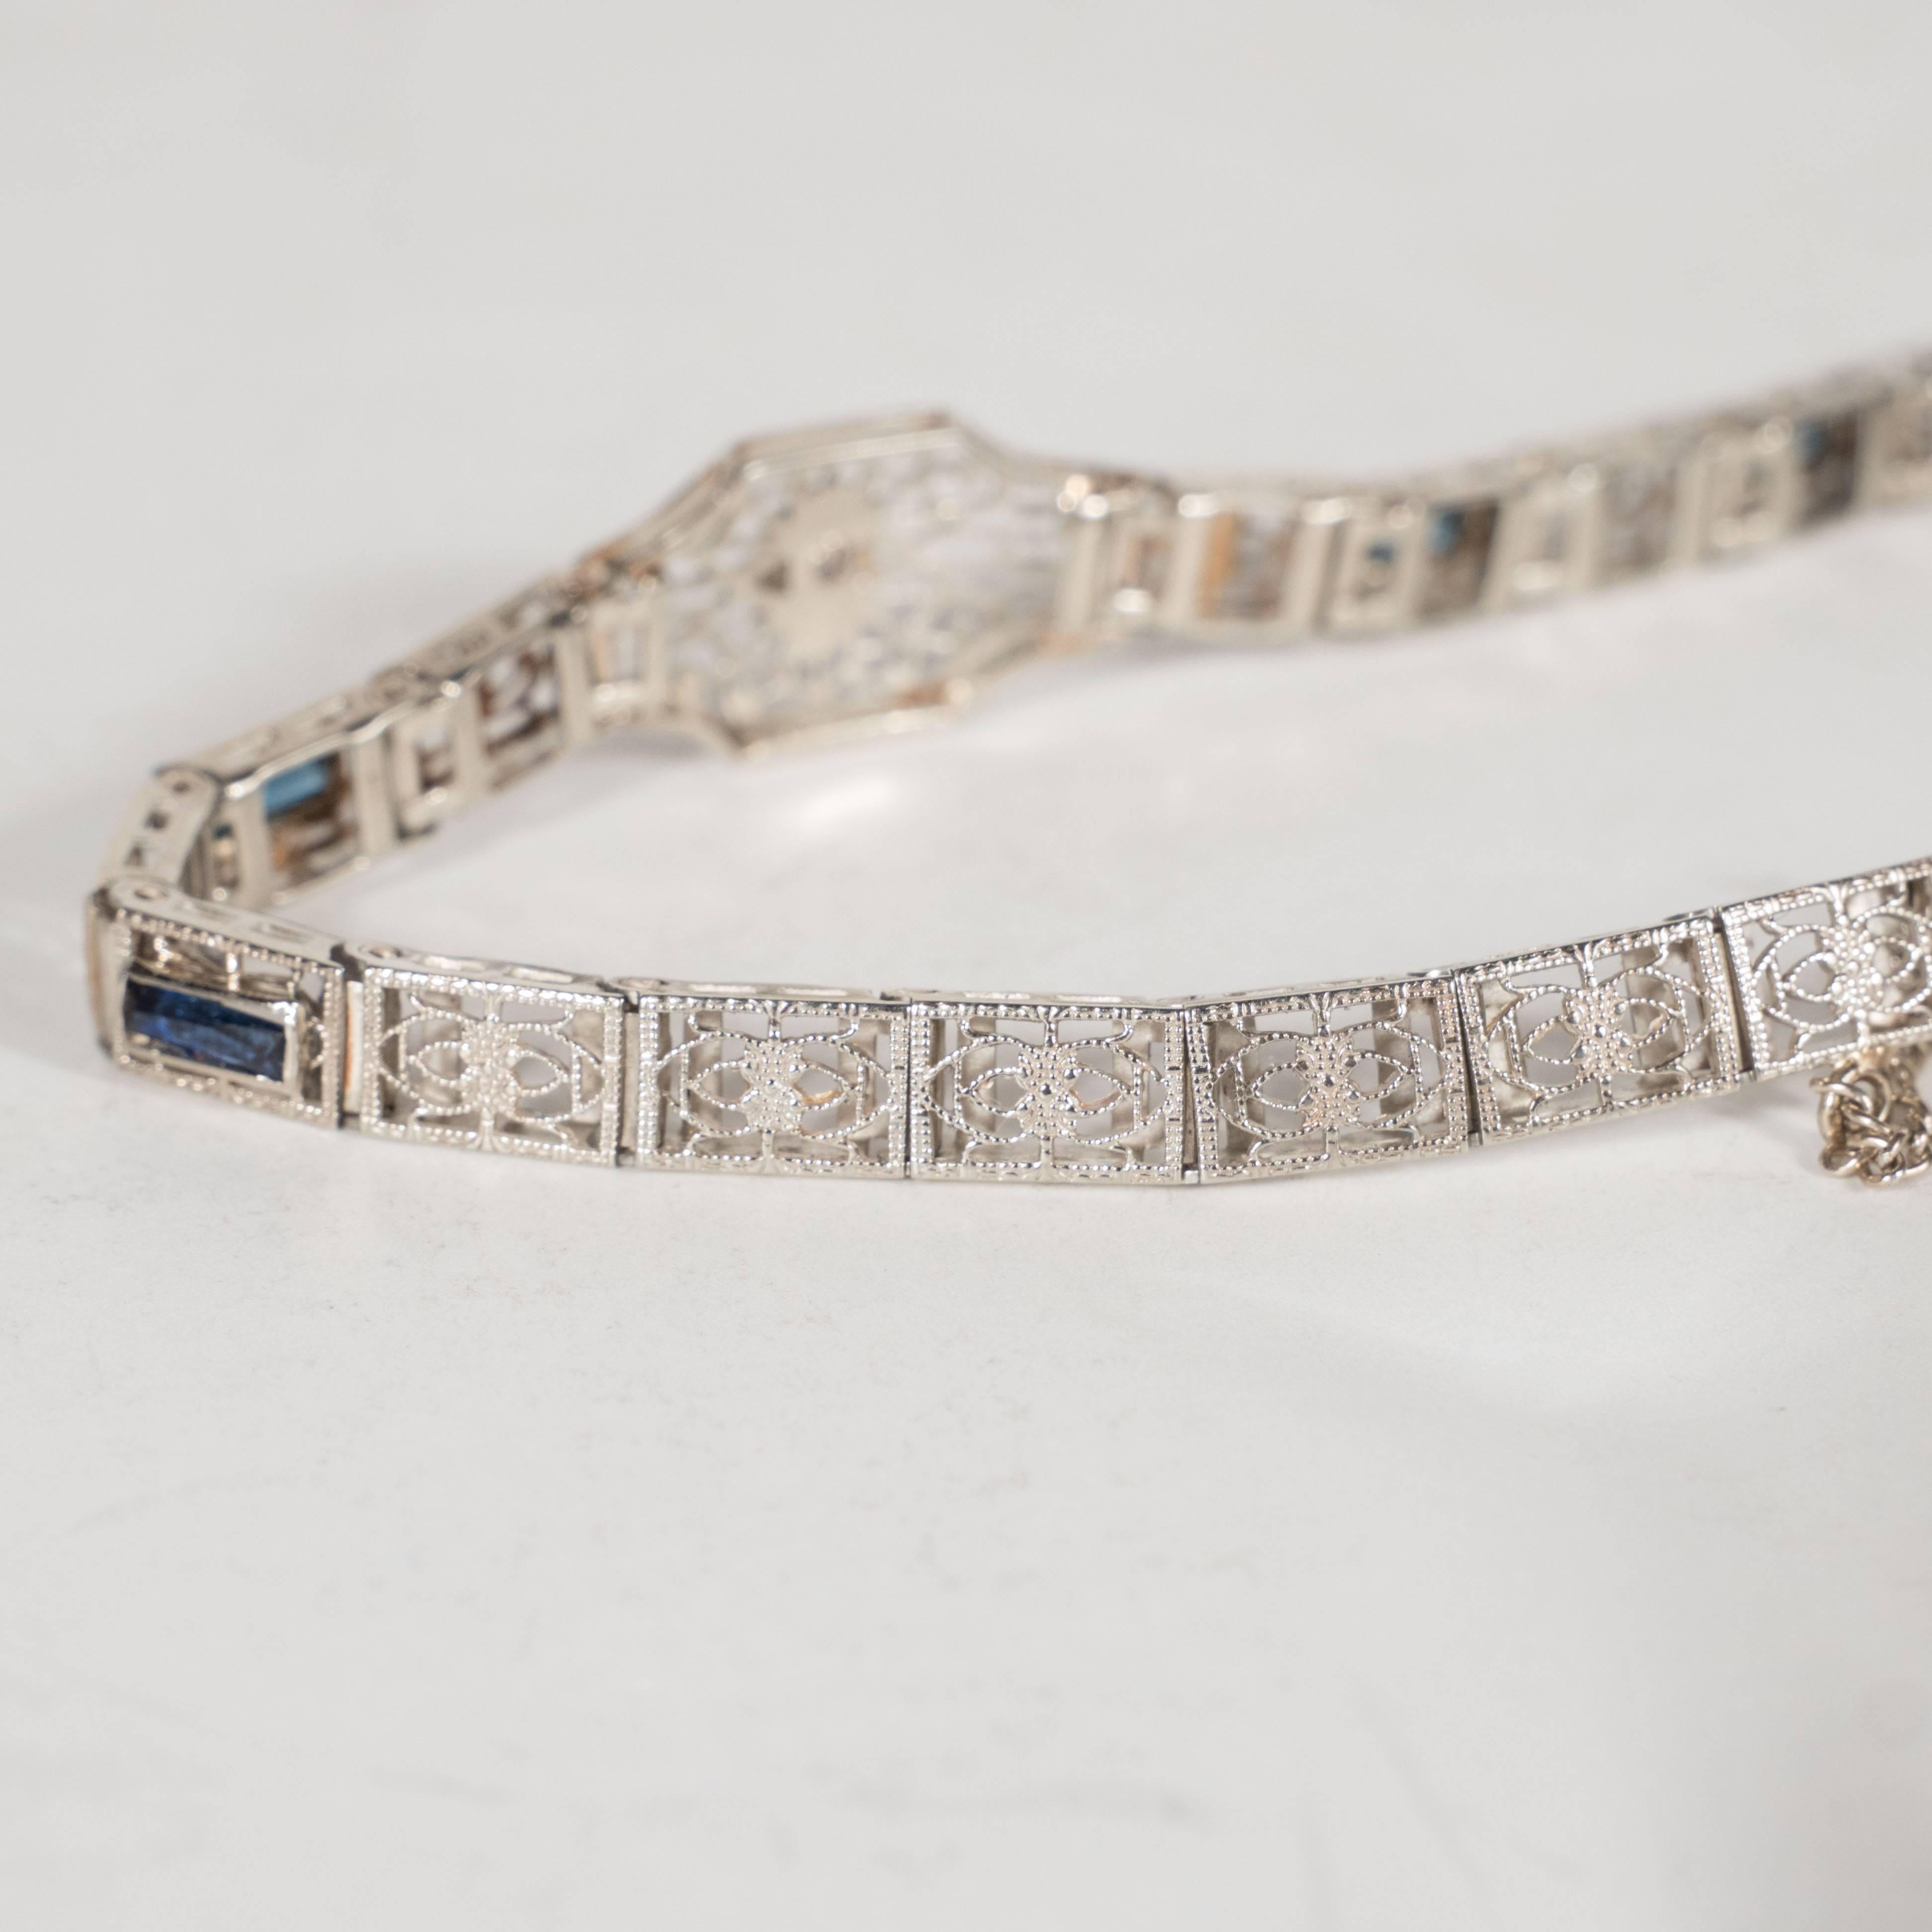 Elegant Art Deco Diamond Bracelet in Filigreed White Gold 1